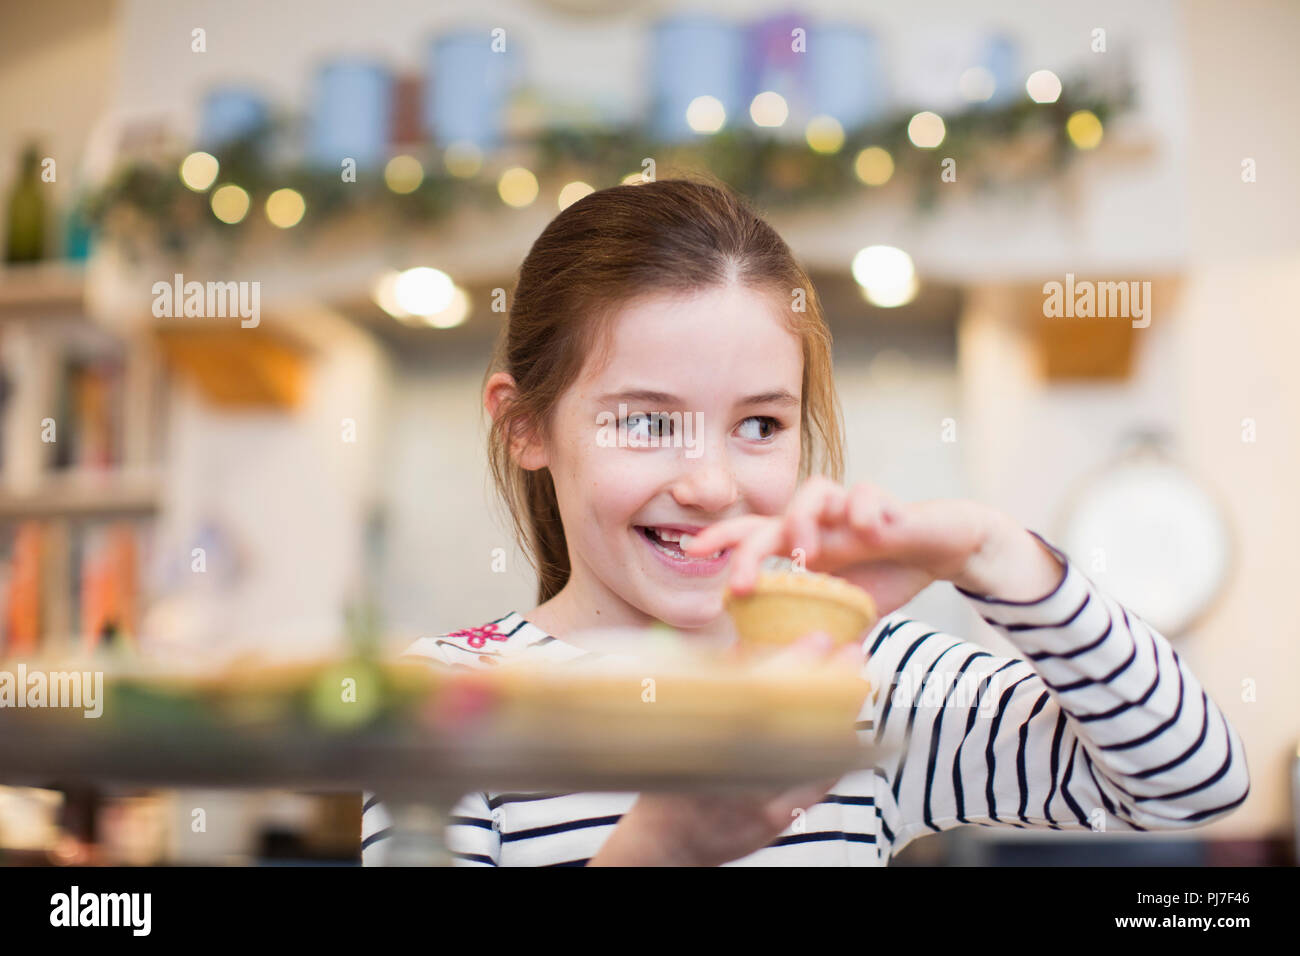 Smiling girl eating Christmas cupcake Stock Photo